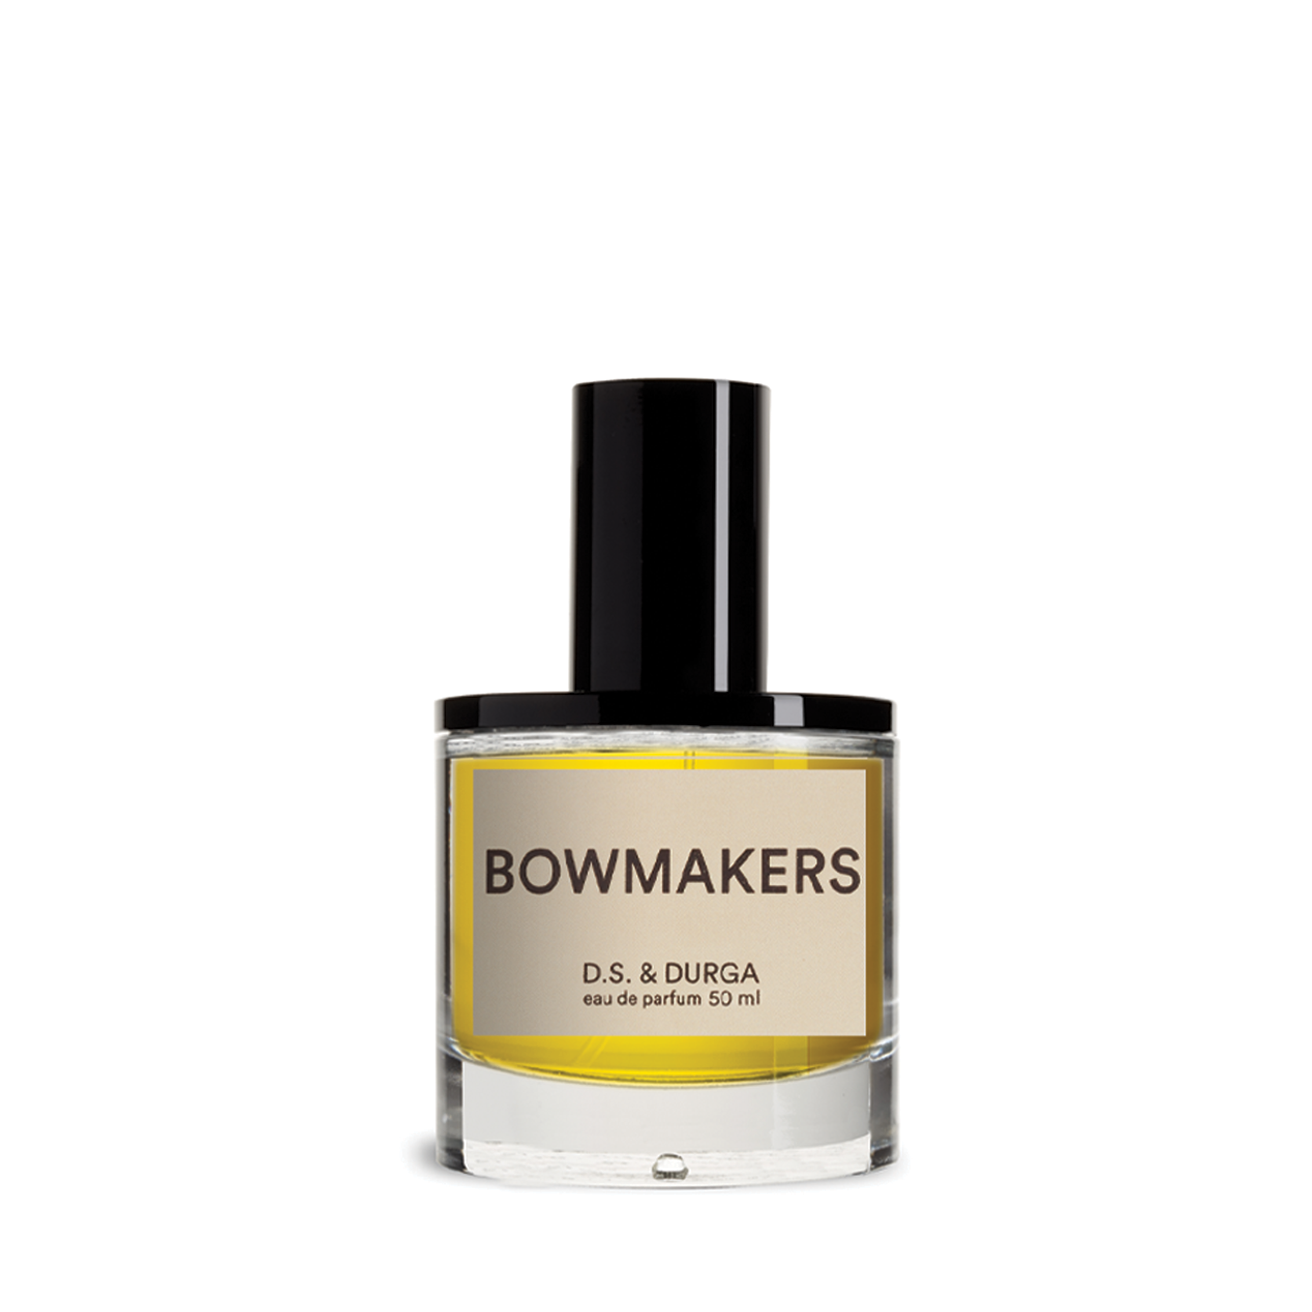 d.s. & durga bowmakers eau de parfum